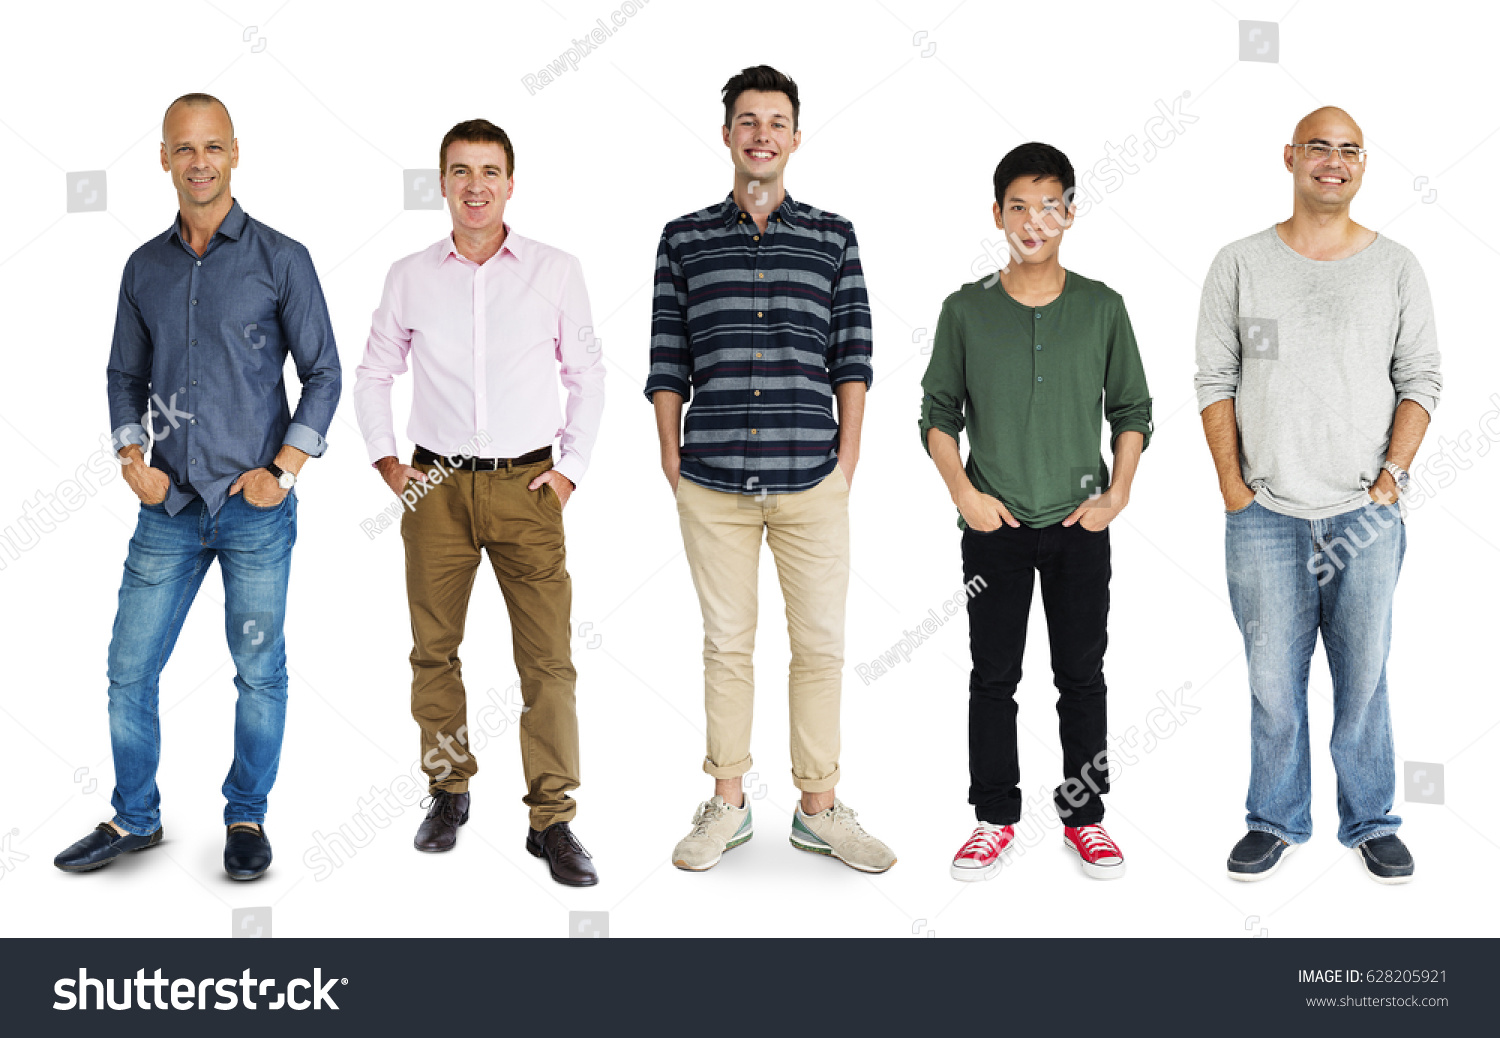 Diversity Adult Men Set Gesture Standing Stock Photo 628205921 ...